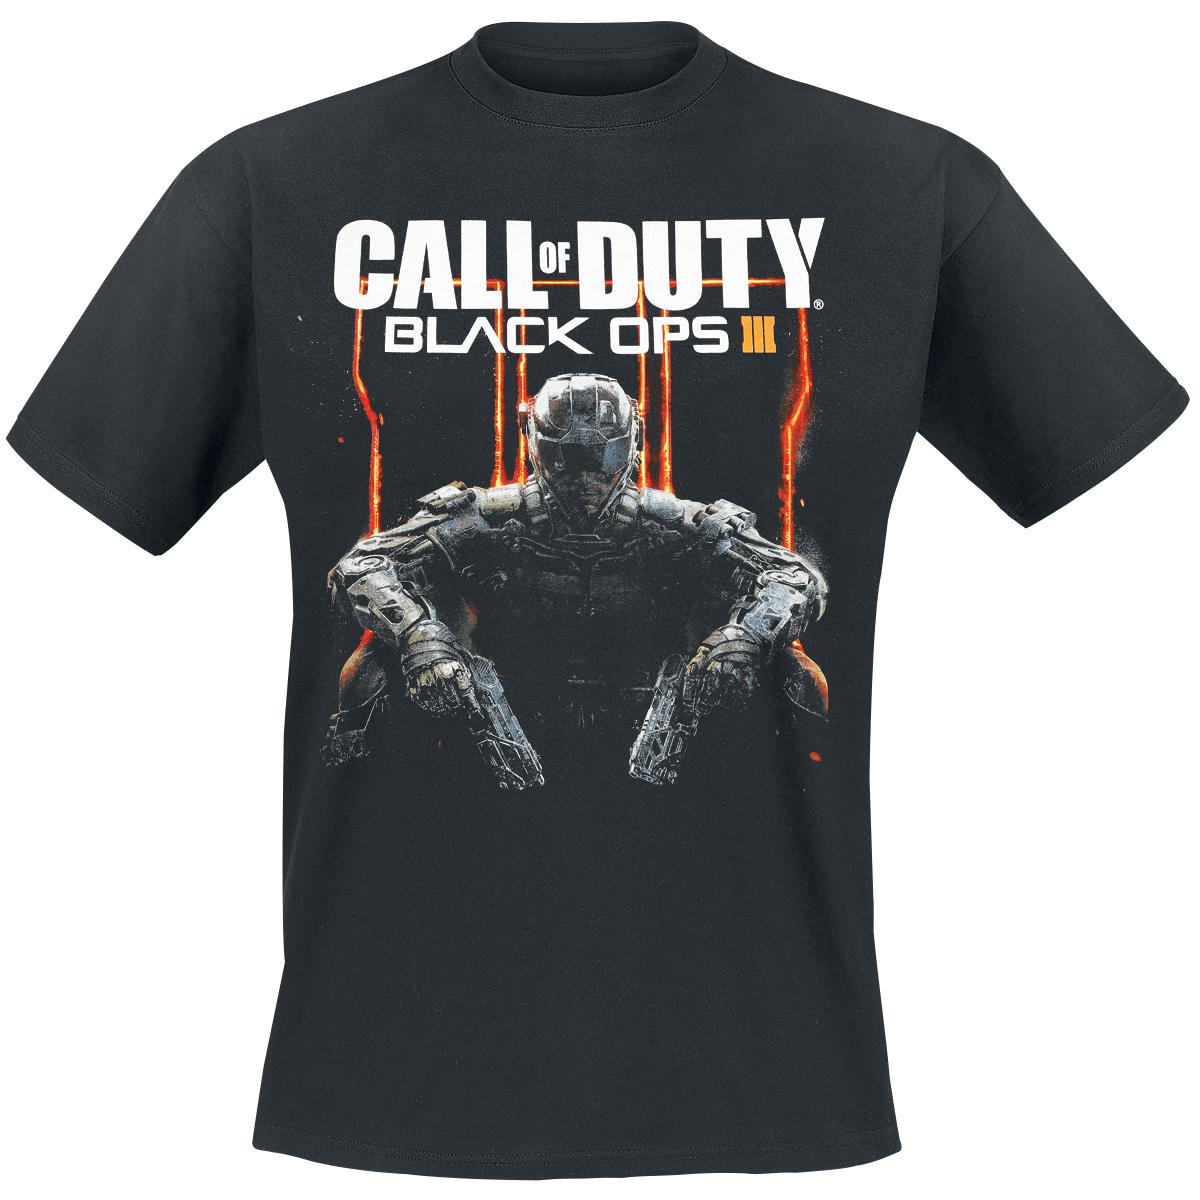 Black Ops III T-shirt Design tee design